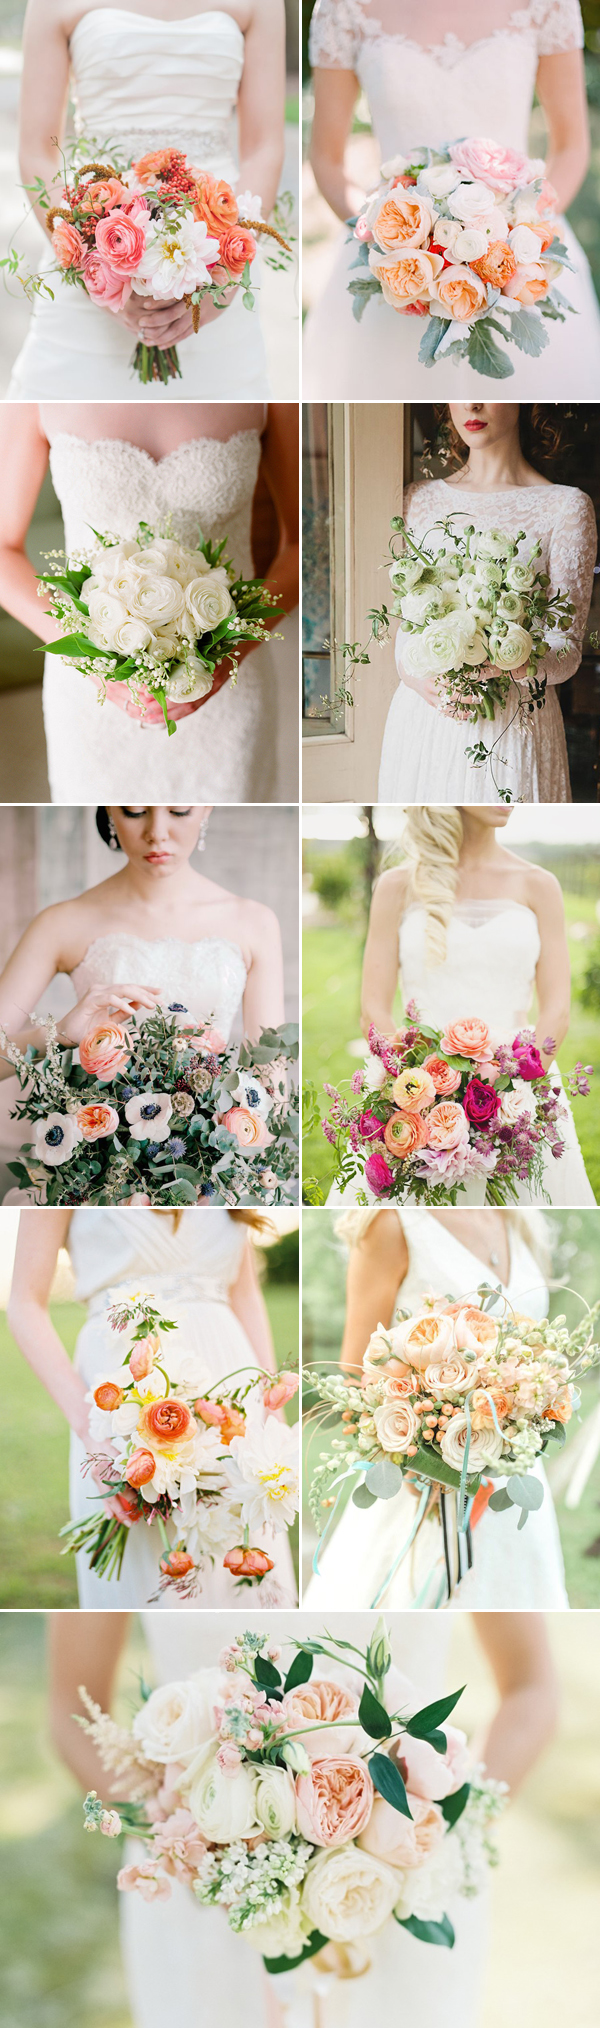 Wedding Flowers - Ranunculus Wedding bridal Bouquets